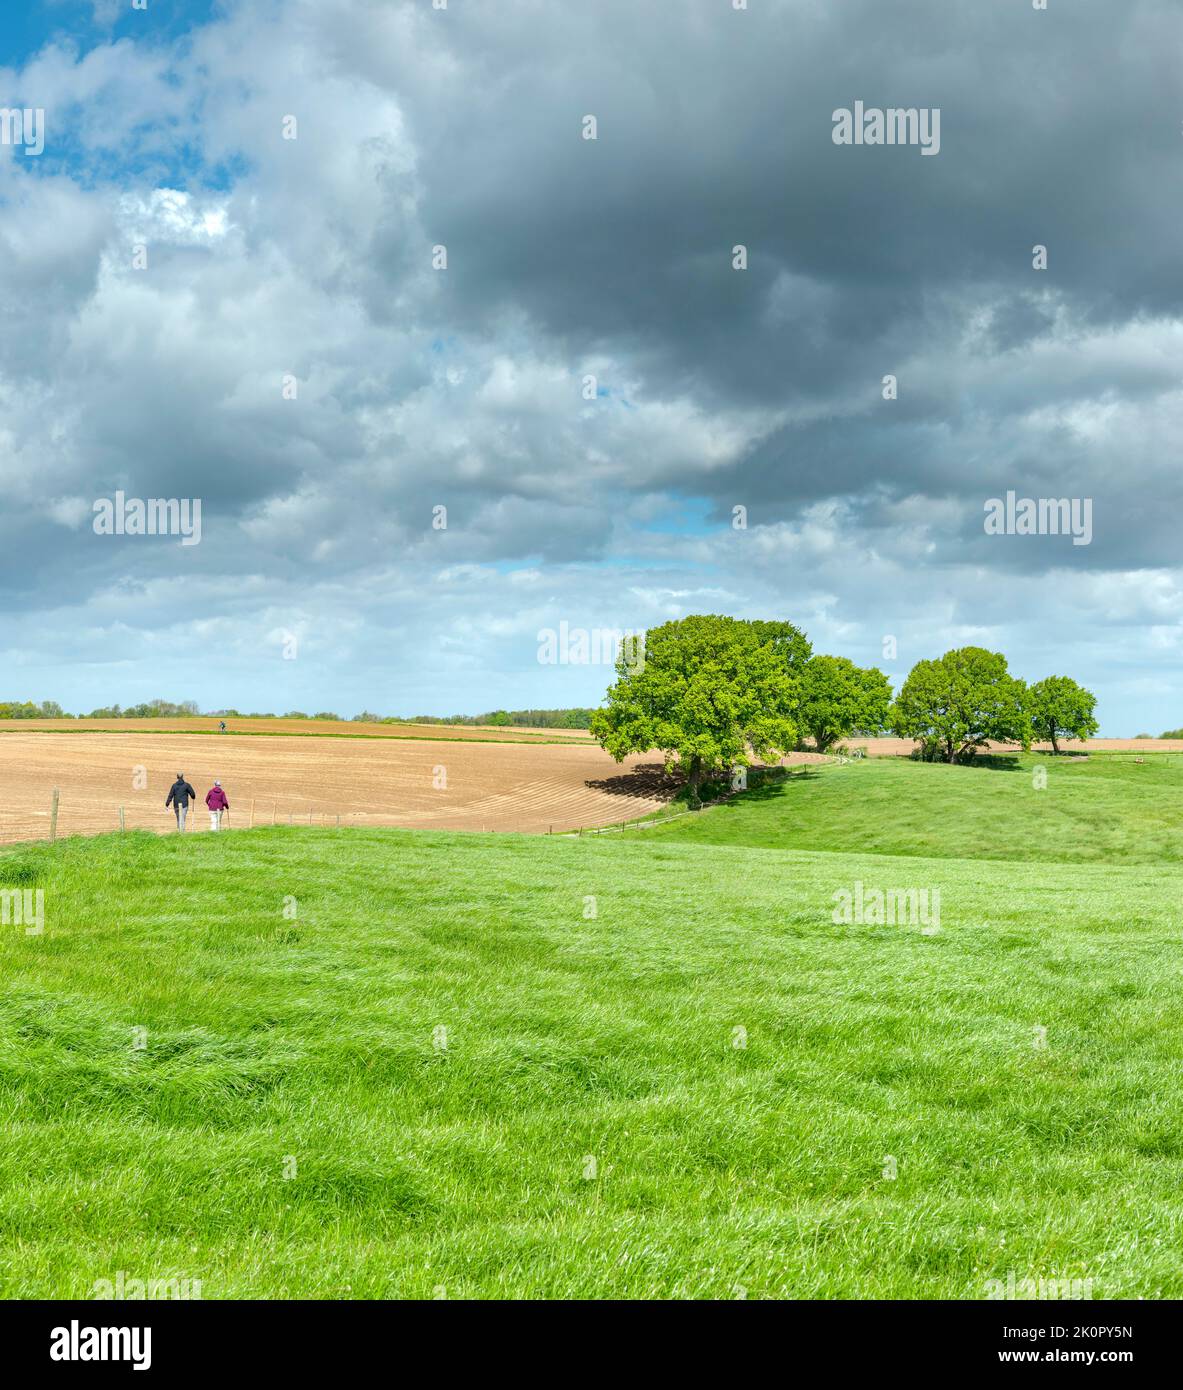 Menschen, die auf einem offenen Feld auf einige Bäume zulaufen, Wijlre, Limburg, Niederlande, Landschaft, Feld, Wiese, Bäume, Frühling, Menschen, *** Lokale Bildunterschrift Stockfoto